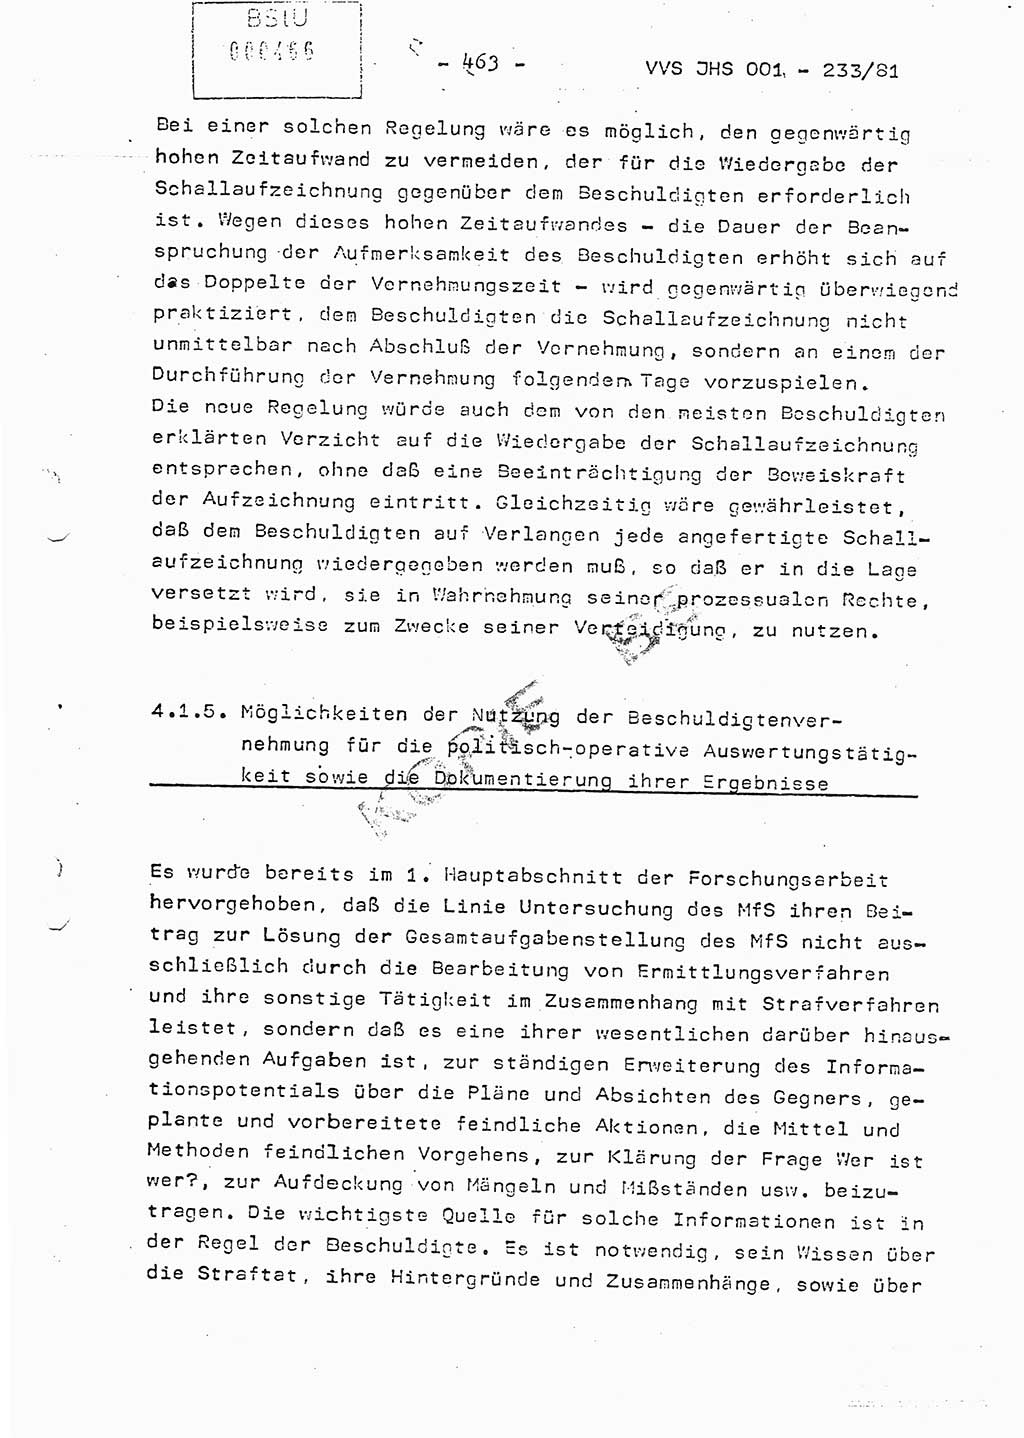 Dissertation Oberstleutnant Horst Zank (JHS), Oberstleutnant Dr. Karl-Heinz Knoblauch (JHS), Oberstleutnant Gustav-Adolf Kowalewski (HA Ⅸ), Oberstleutnant Wolfgang Plötner (HA Ⅸ), Ministerium für Staatssicherheit (MfS) [Deutsche Demokratische Republik (DDR)], Juristische Hochschule (JHS), Vertrauliche Verschlußsache (VVS) o001-233/81, Potsdam 1981, Blatt 463 (Diss. MfS DDR JHS VVS o001-233/81 1981, Bl. 463)